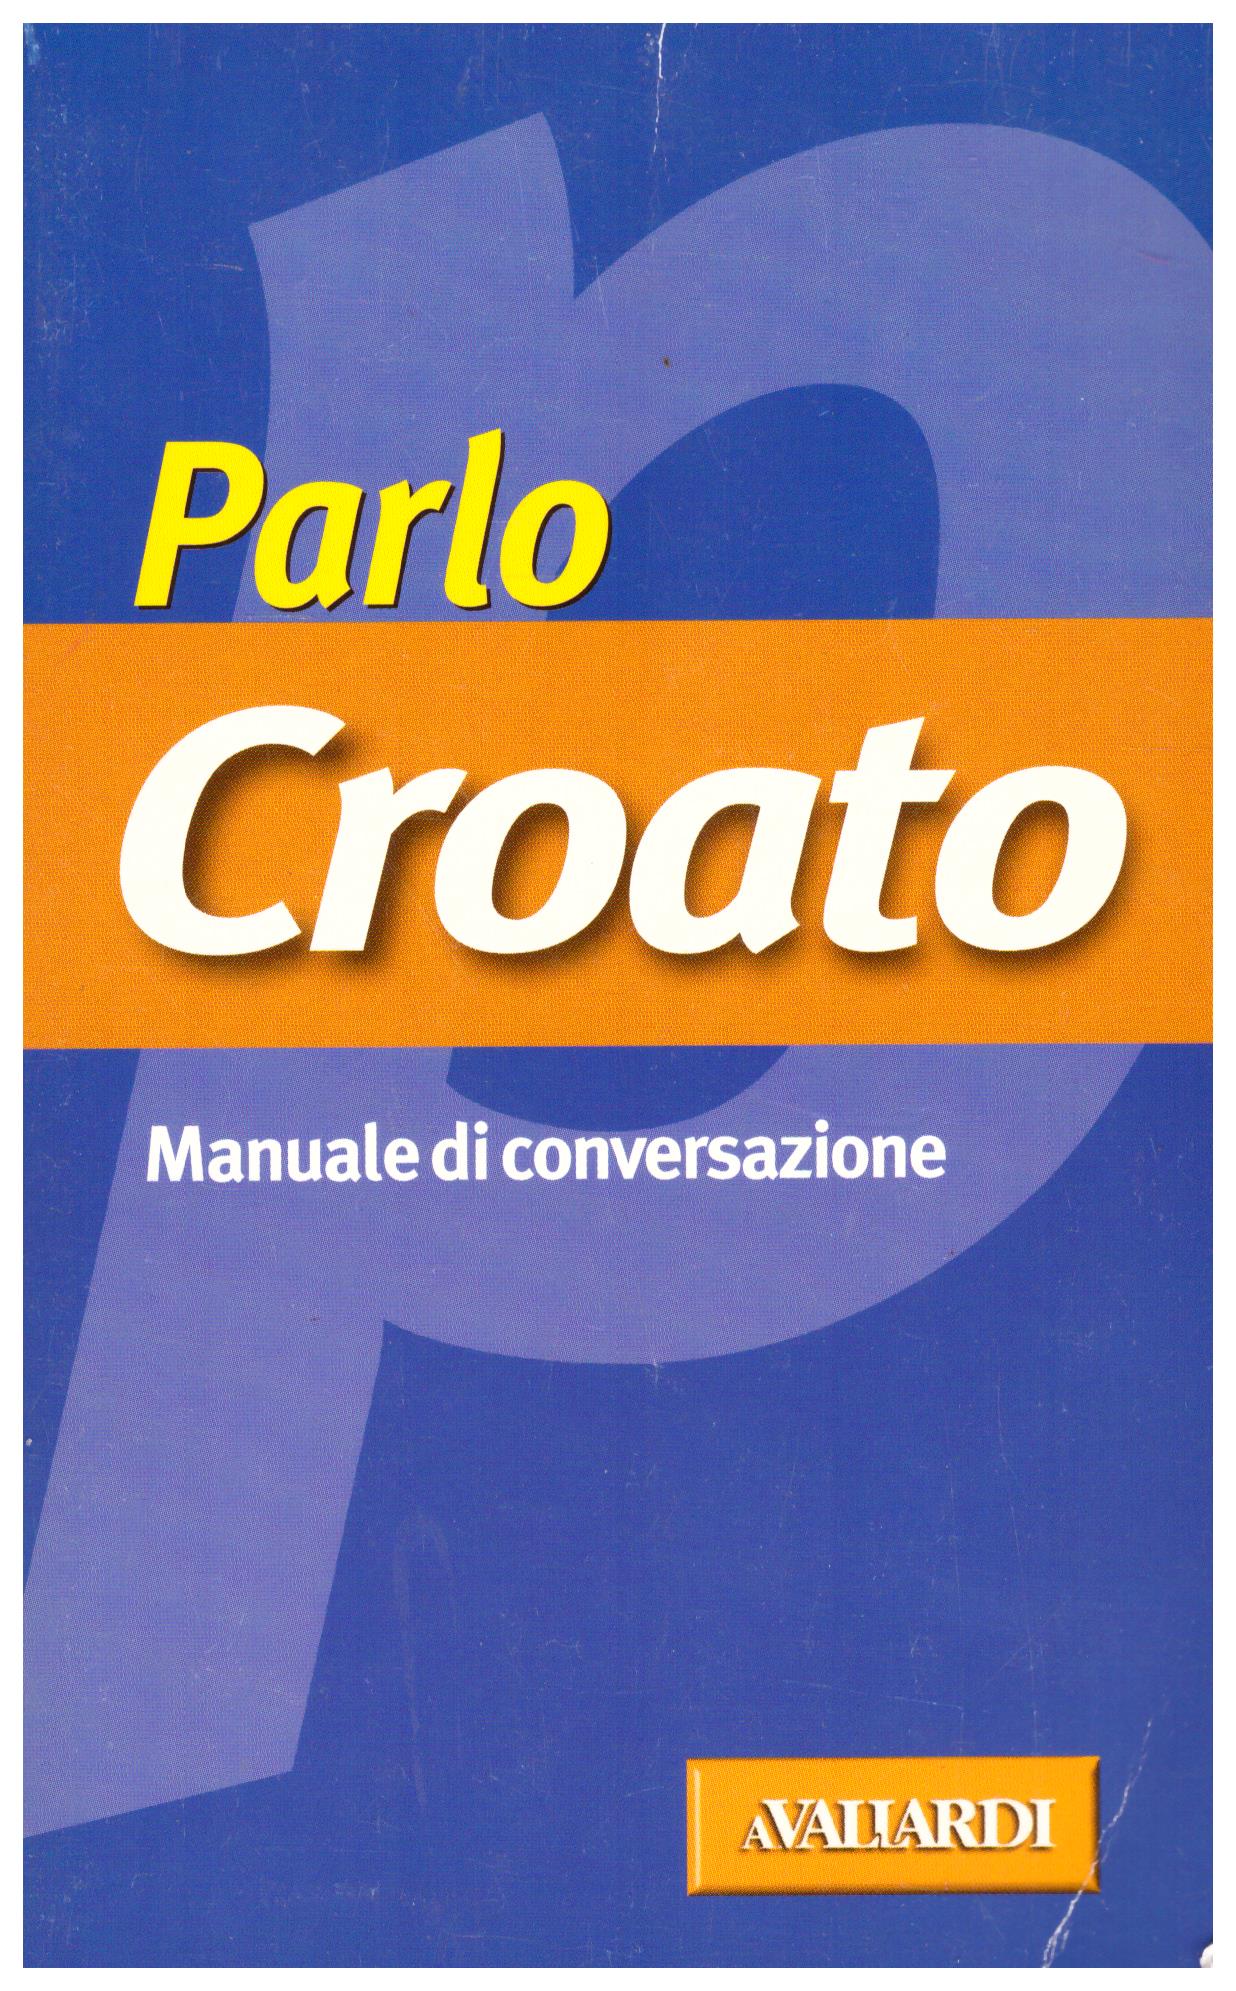 Titolo: Parlo Croato Autore: AA.VV.  Editore: avaliardi, 2004